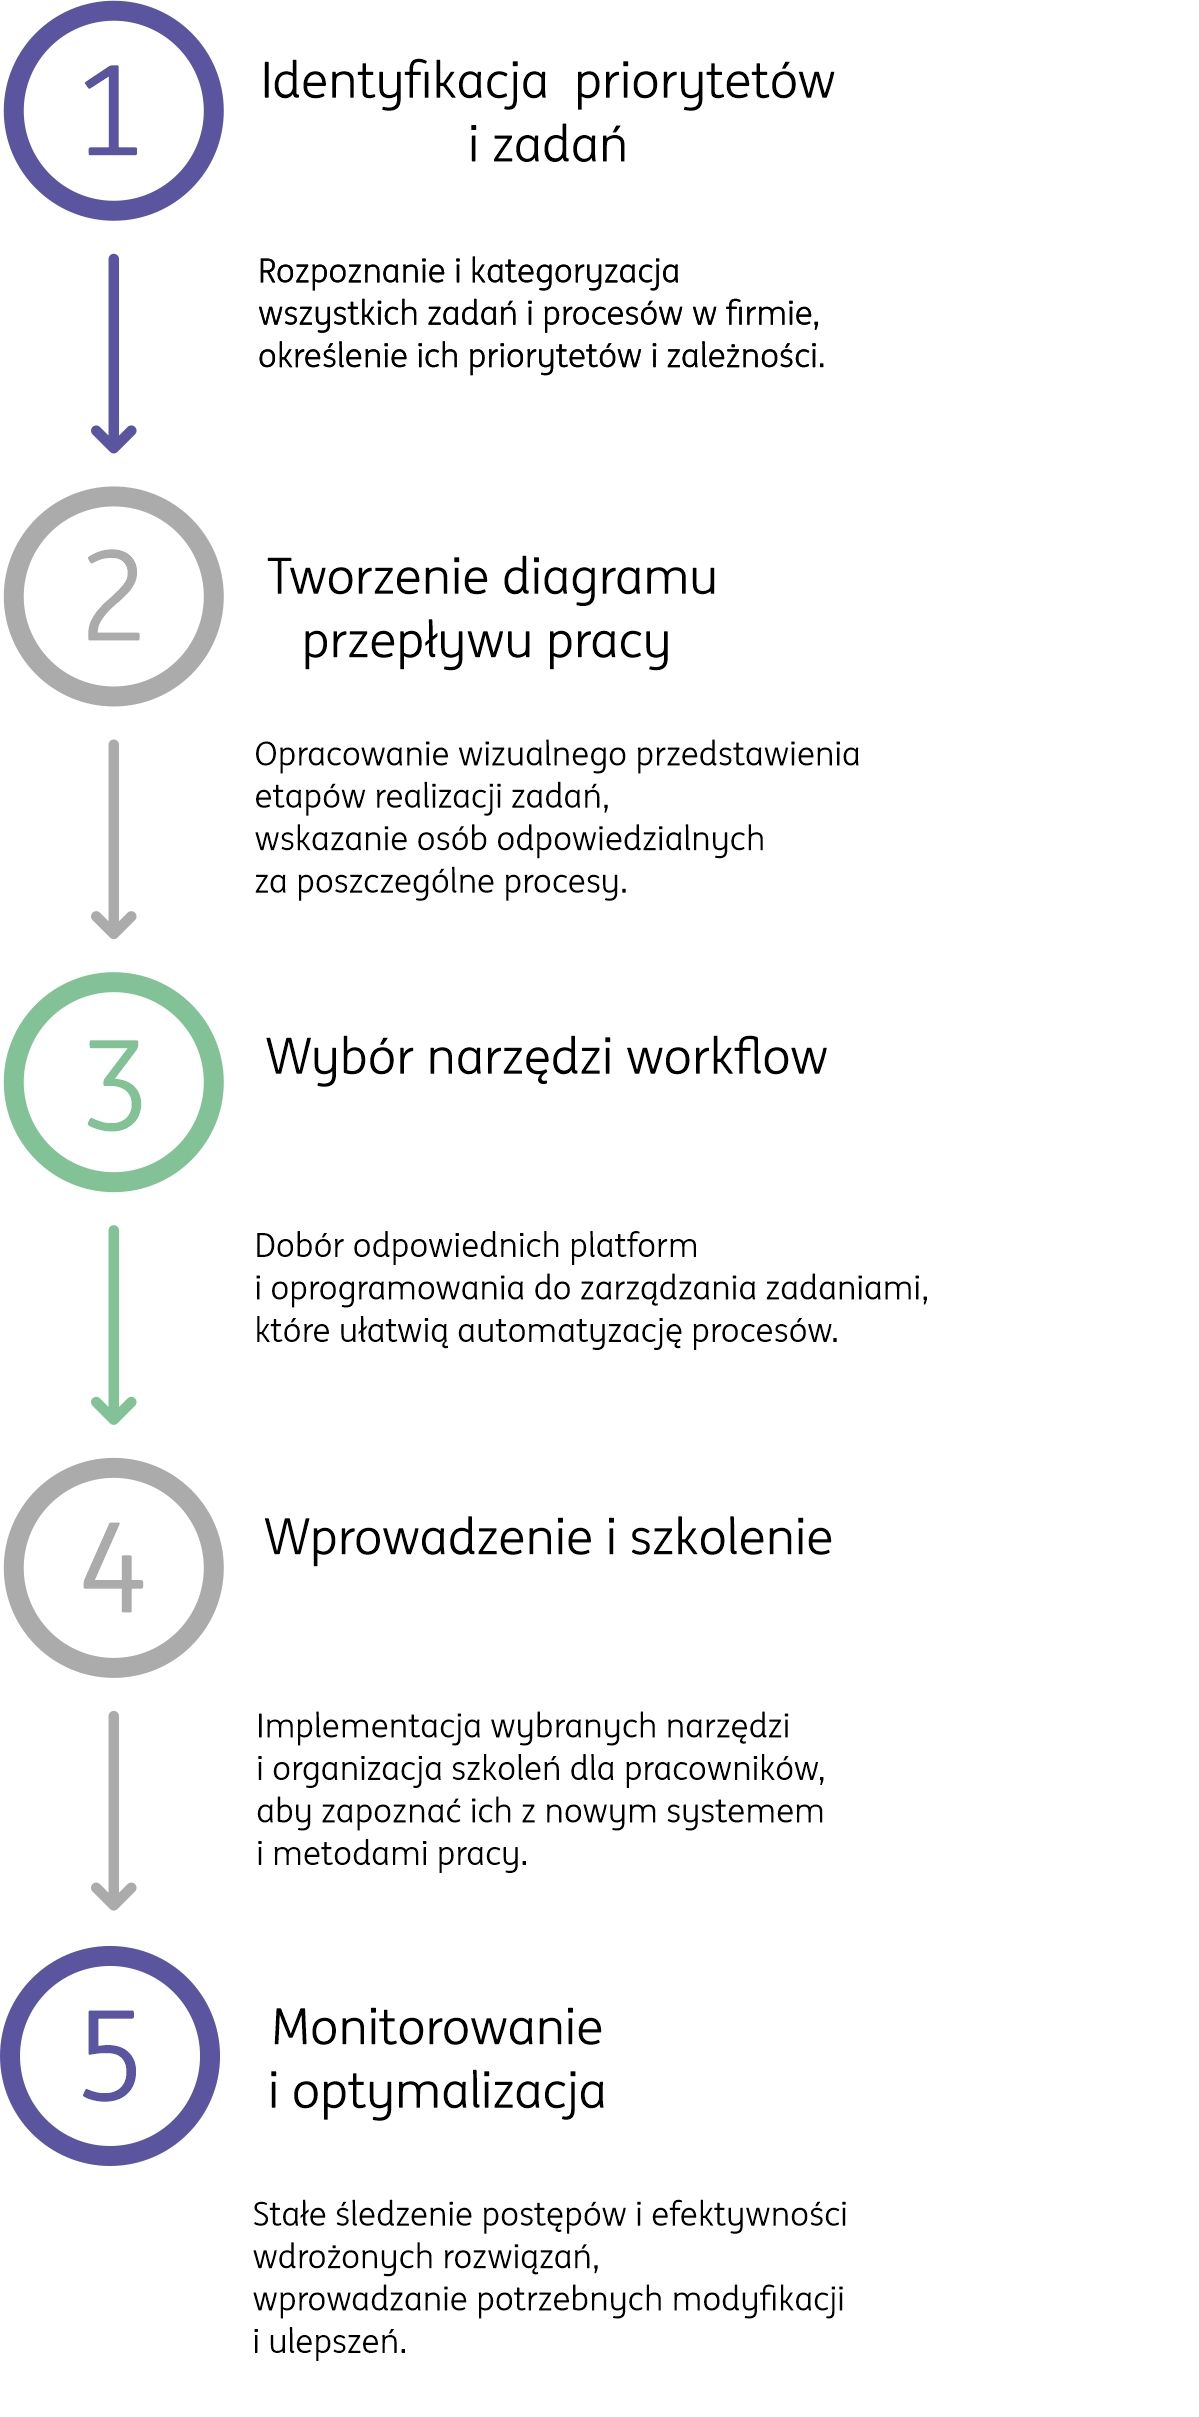 graficzne przedstawienie systemu workflow, czyli jak workflow działa w praktyce